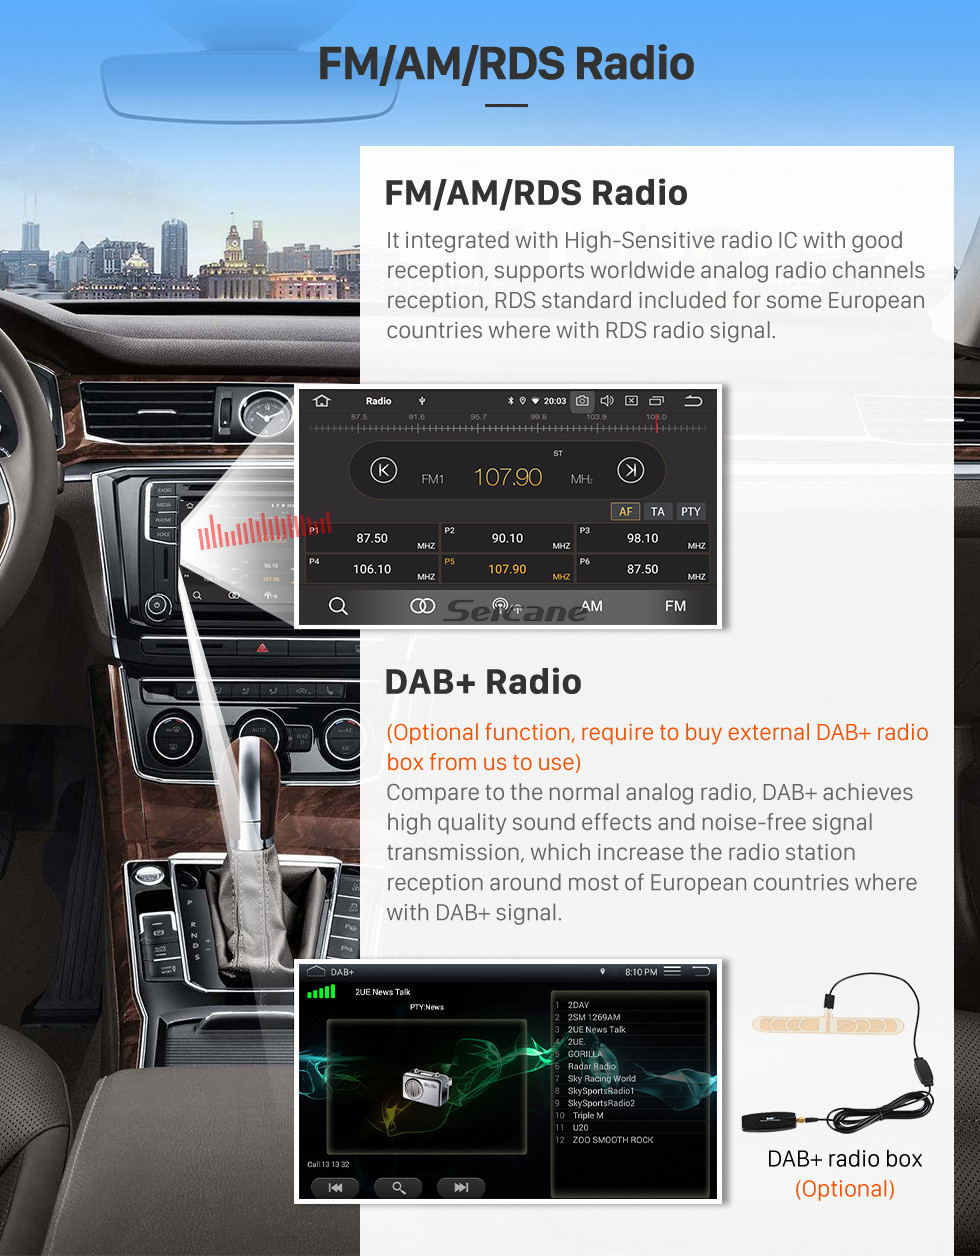 Seicane 9 pouces Pour 2015 2016 2017 2018 Citroen Beringo Radio Android 11.0 Navigation GPS Bluetooth HD Écran tactile Soutien Carplay Télévision numérique